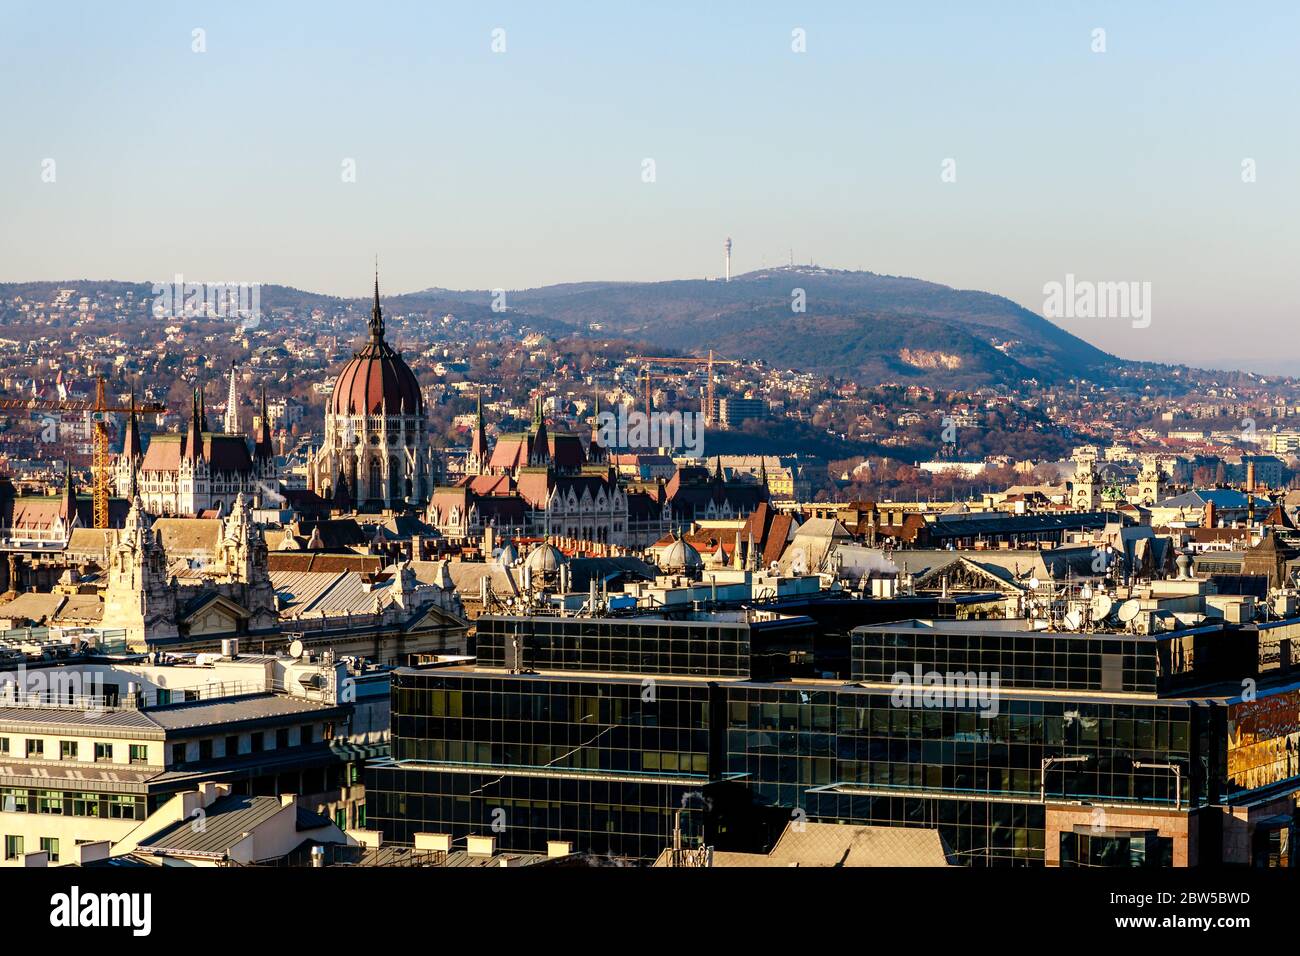 Vue panoramique depuis la tour de l'église du centre-ville de Budapest Banque D'Images